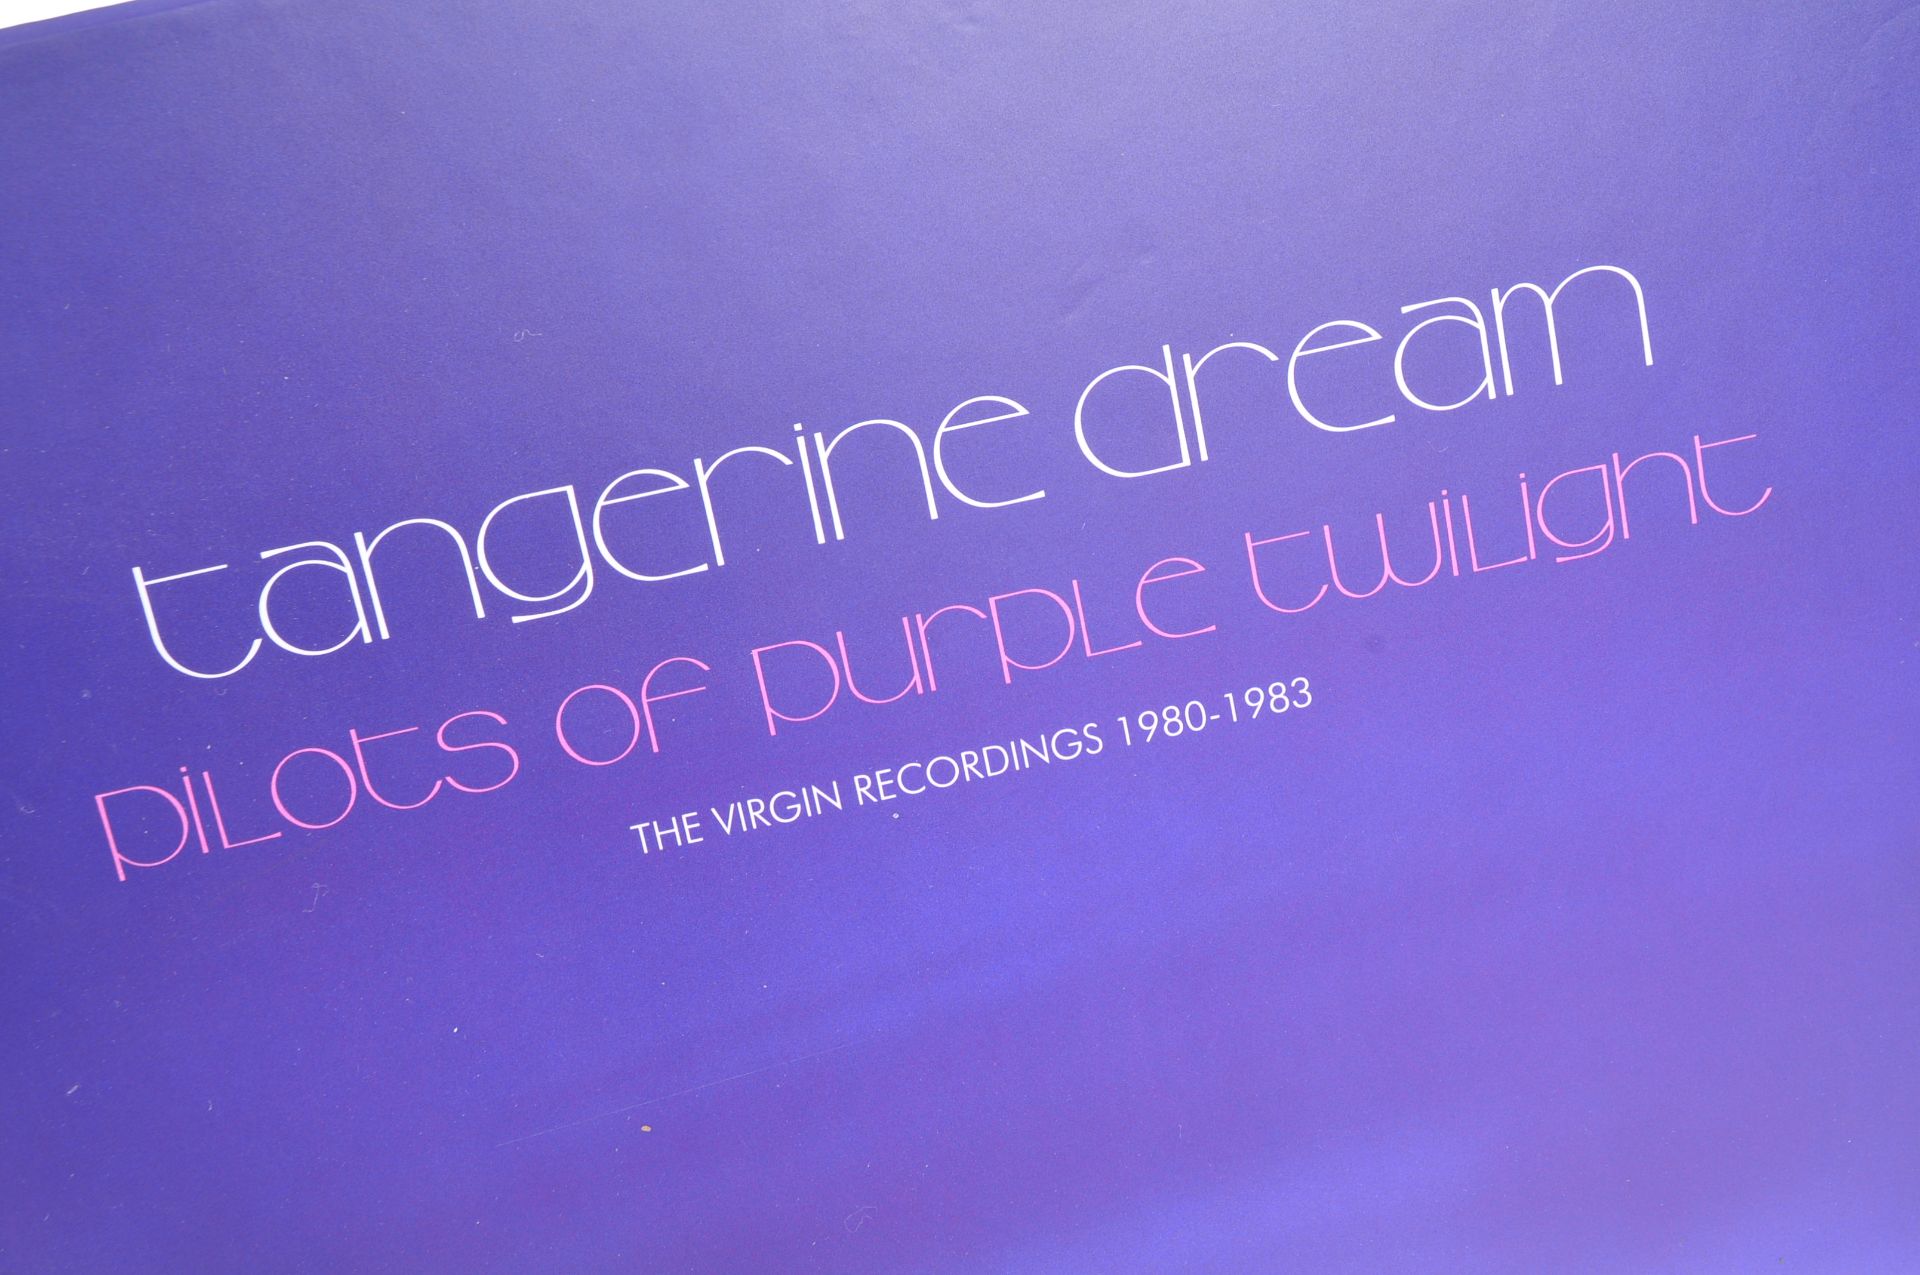 TANGERINE DREAM PILOTS OF THE PURPLE TWILIGHT 10 CD ALBUMs - Bild 2 aus 8